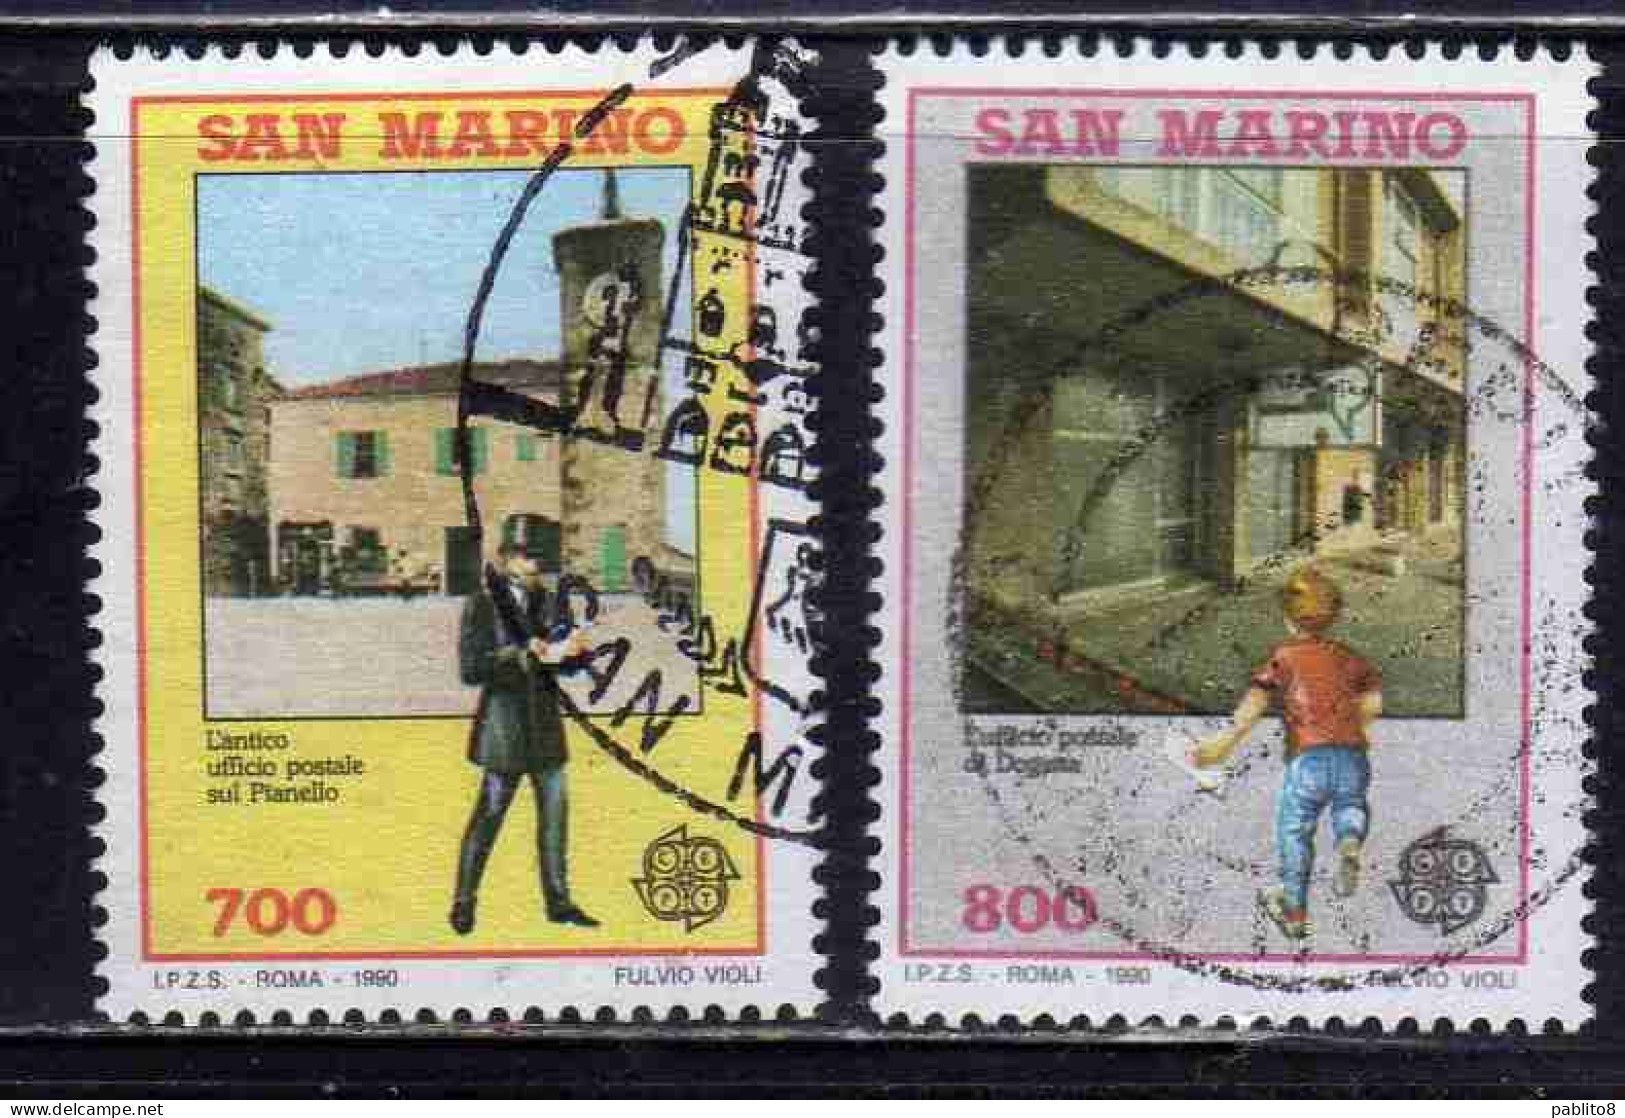 REPUBBLICA DI SAN MARINO 1990 EUROPA UNITA CEPT SERIE COMPLETA COMPLETE SET USATA USED OBLITERE' - Used Stamps